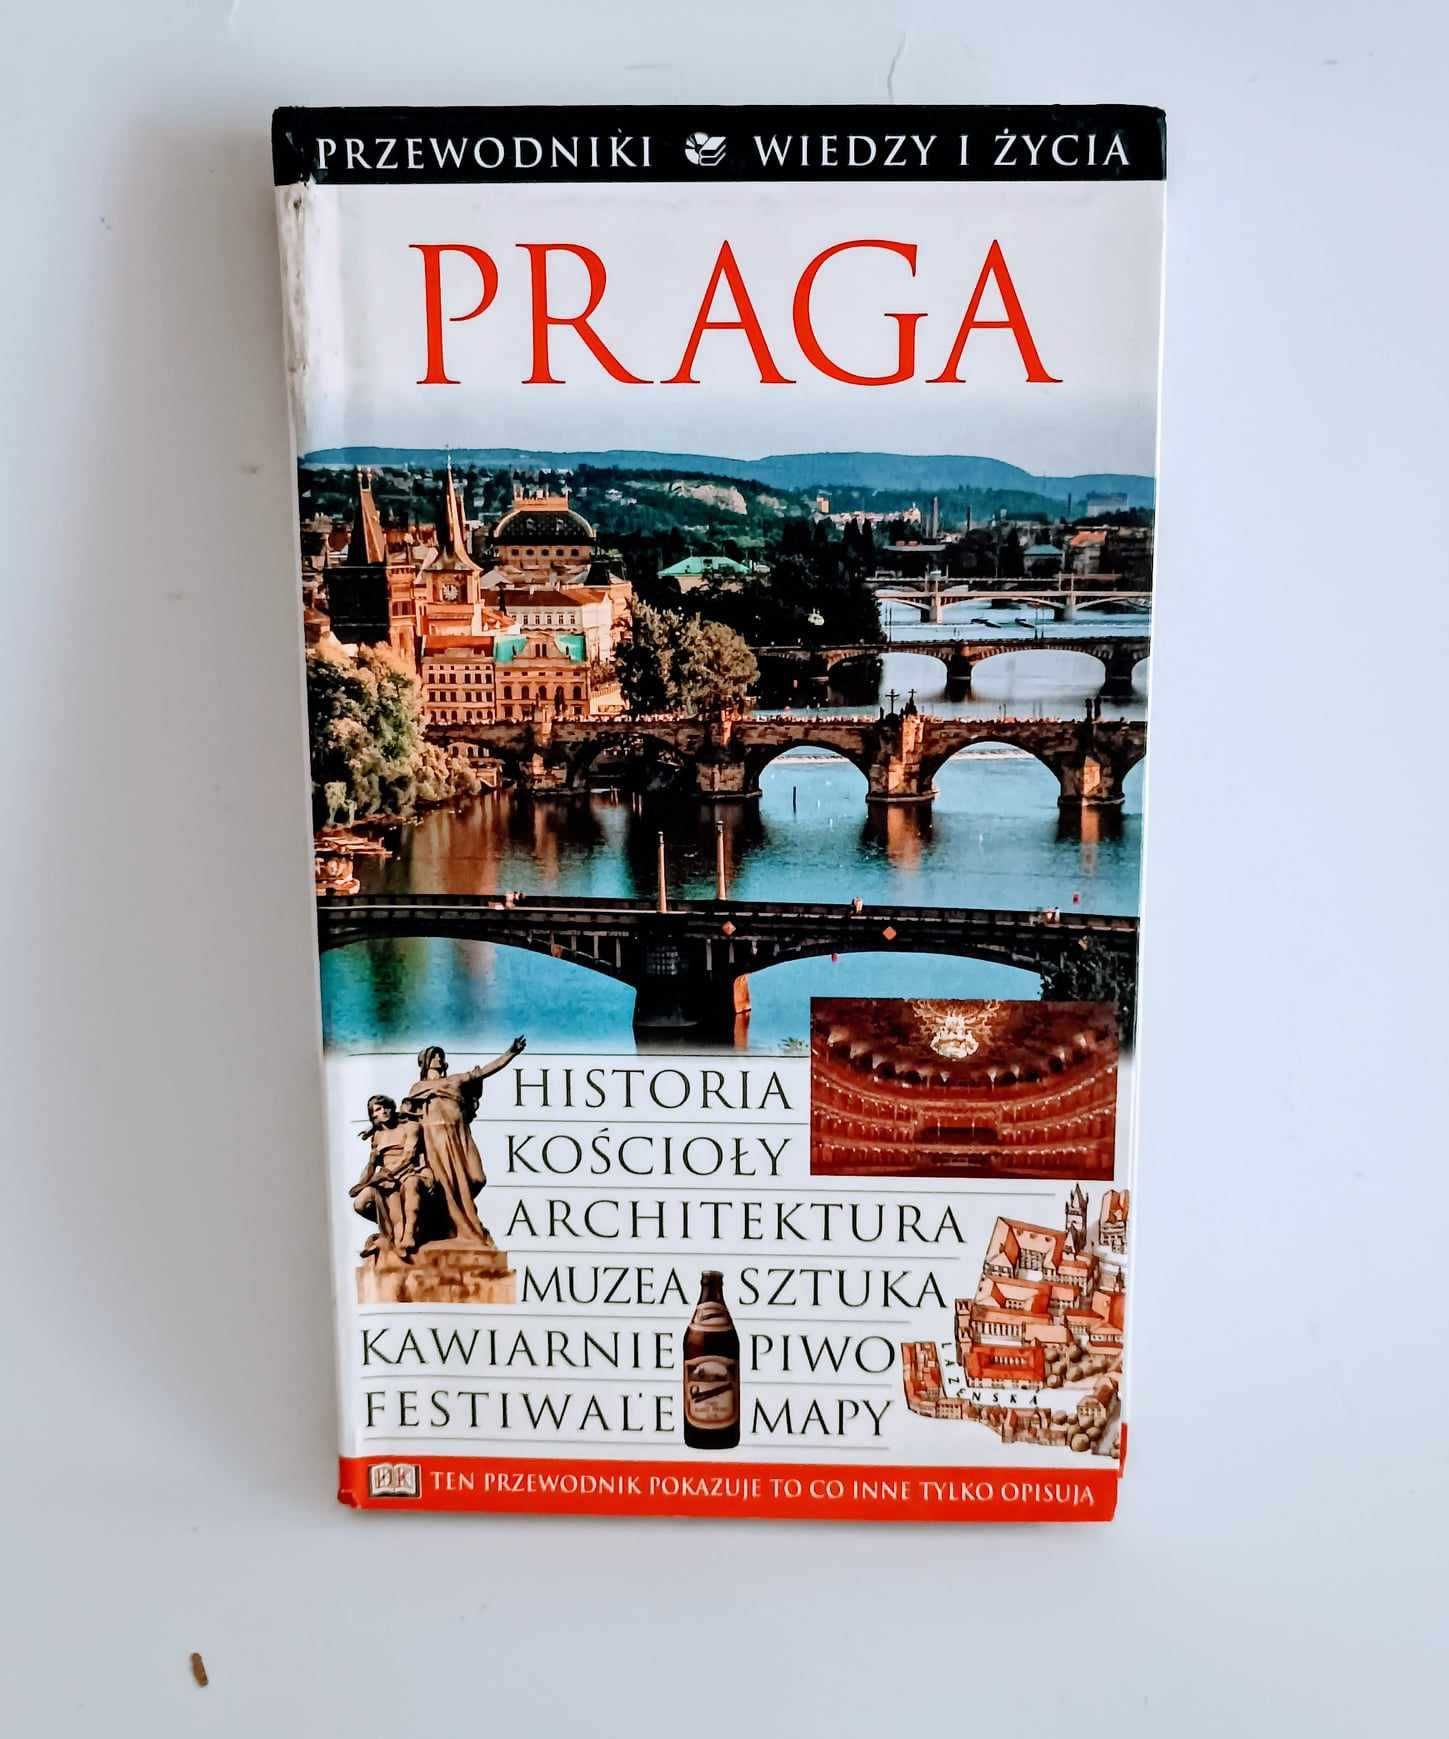 Praga - Przewodnik wiedzy i życia UNIKAT